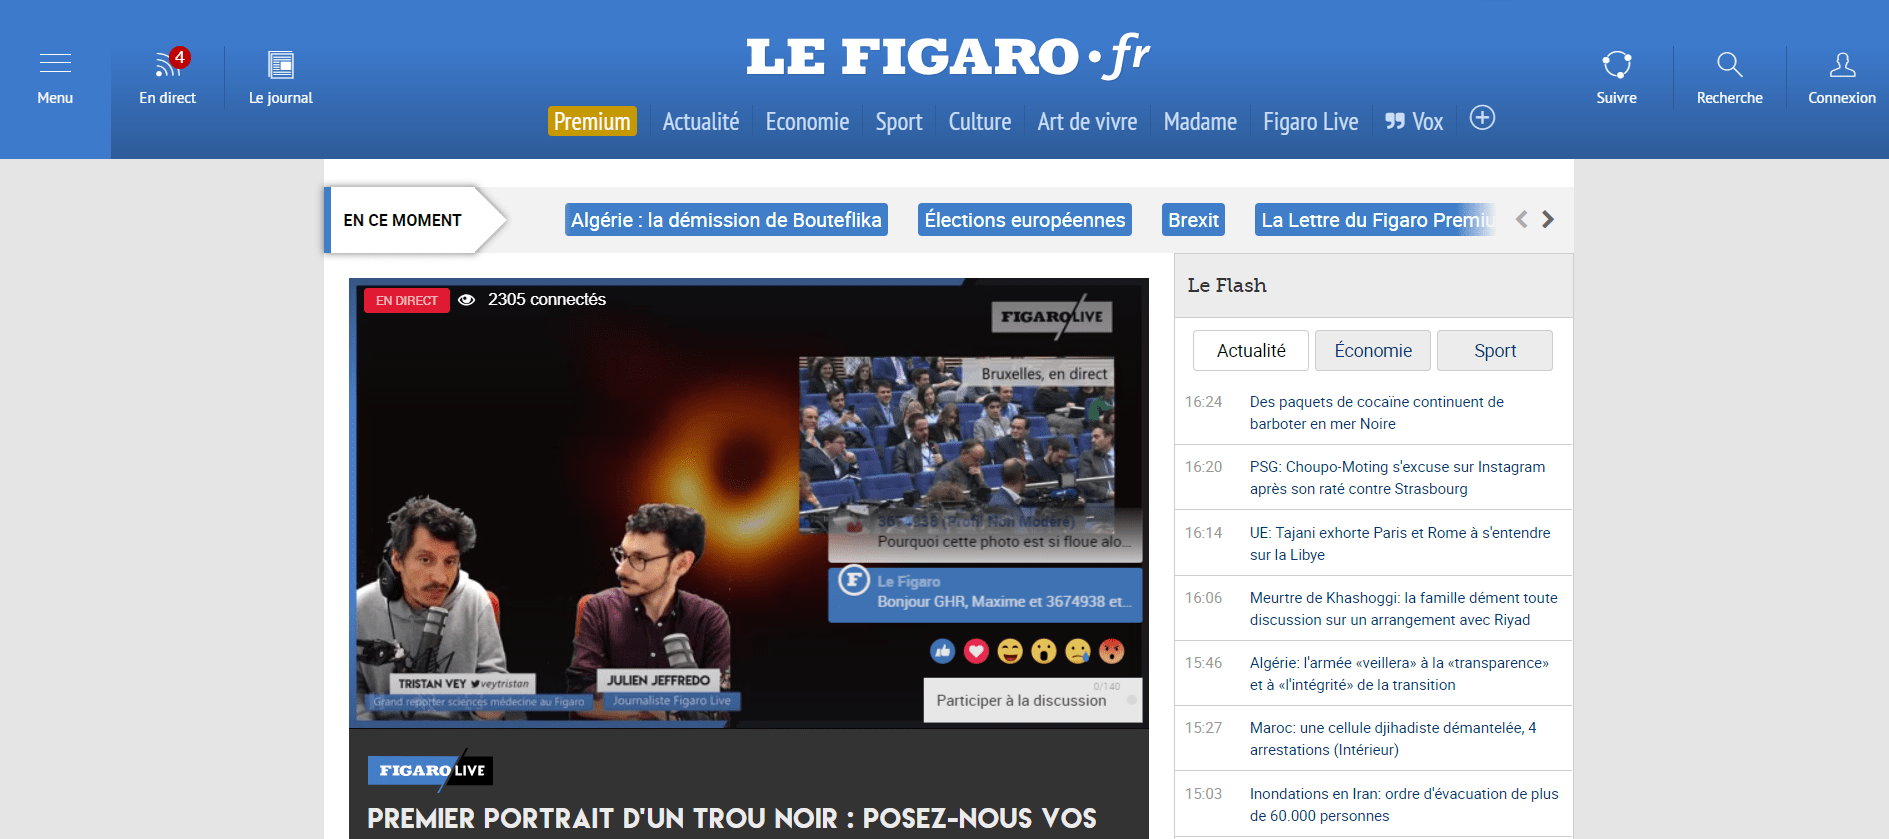 Le Figaro Drupal Website